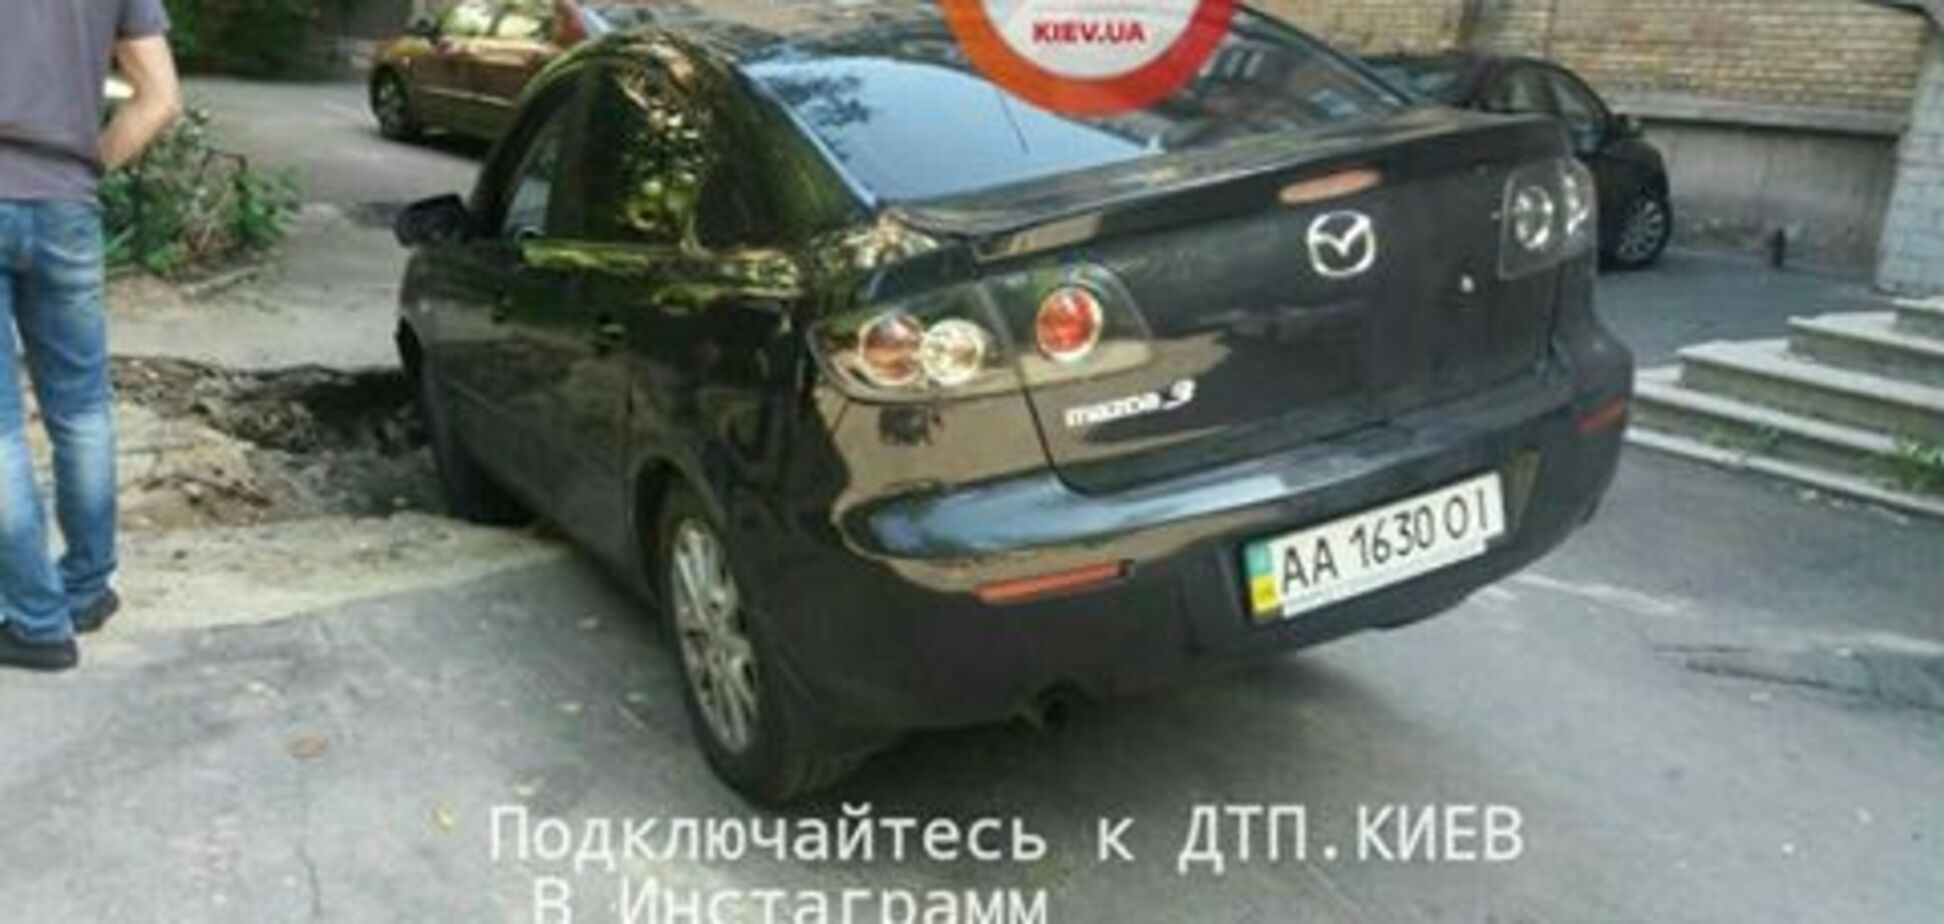 'Упала в окоп': в Киеве под машиной разверзся асфальт. Фотофакт